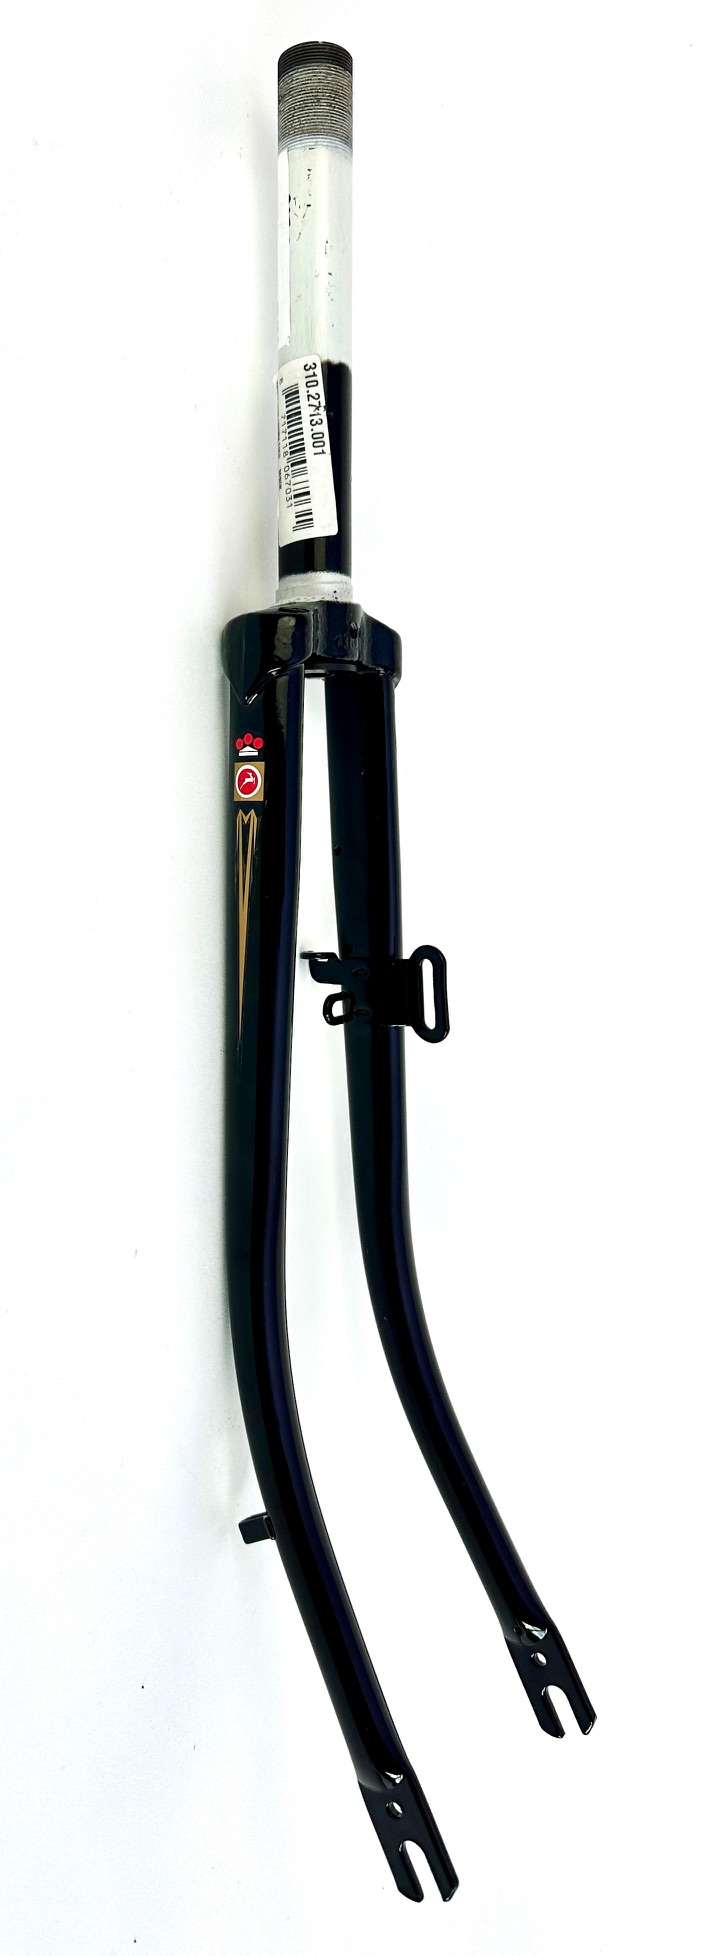 Forcella per bicicletta Gazelle 28 pollici lunghezza albero 180mm,  nero